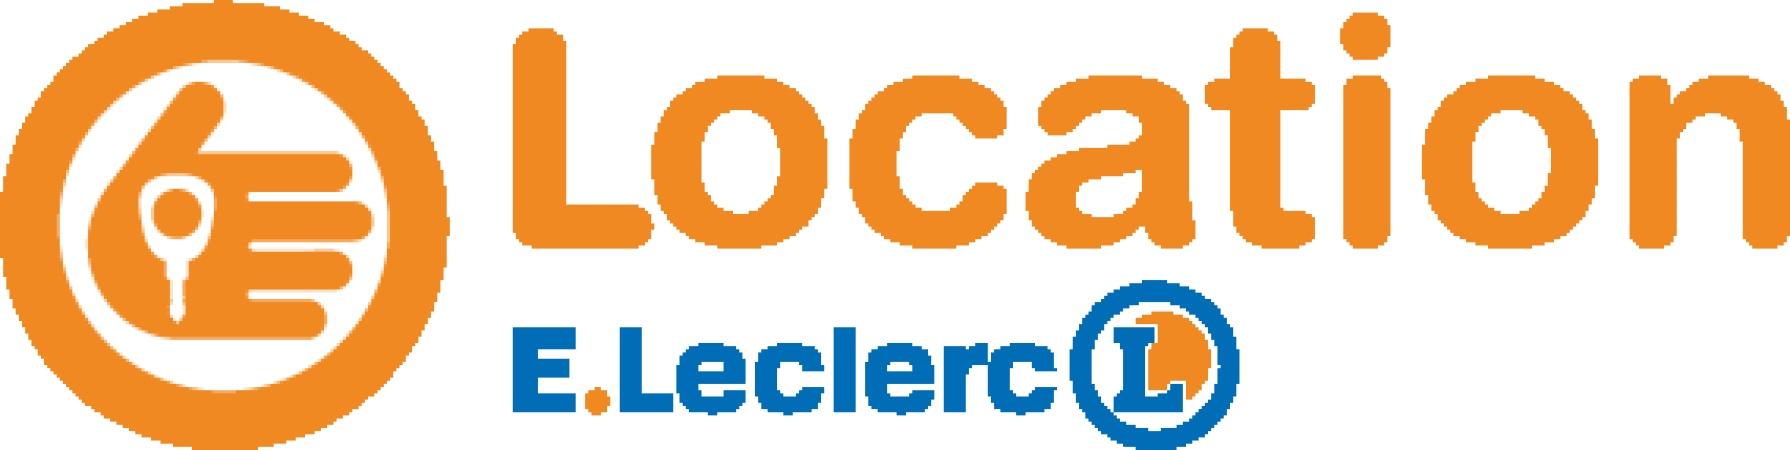 E.leclerc Location Loches